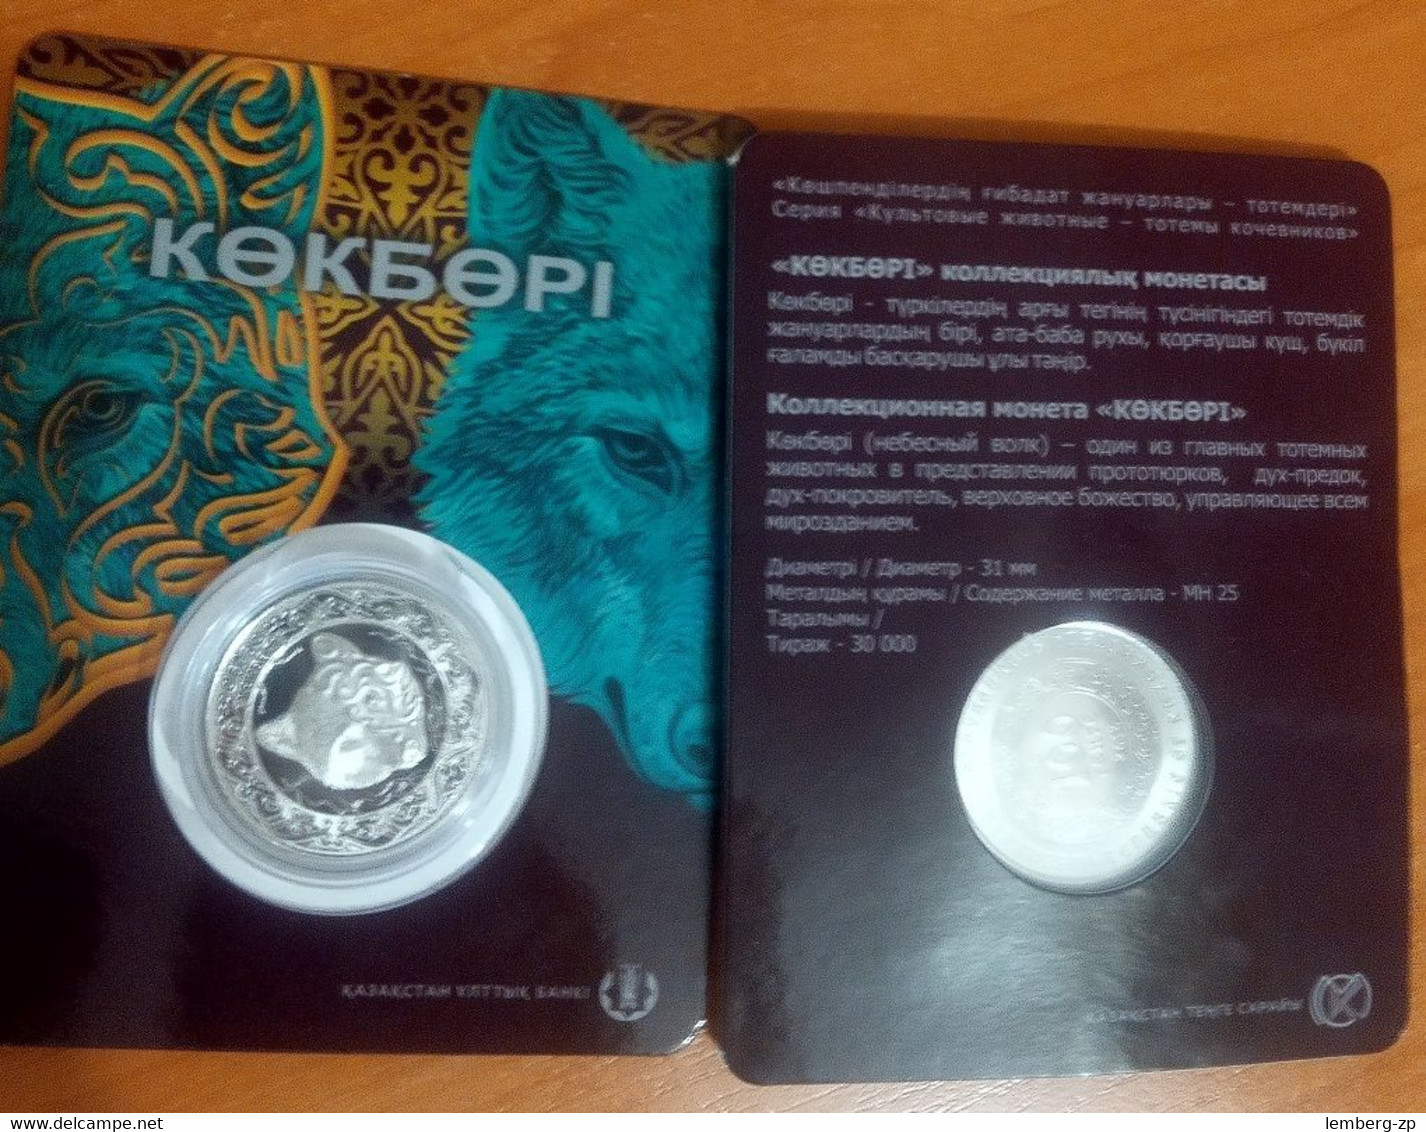 Kazakhstan - 100 Tenge 2018 UNC Wolf In The Booklet Lemberg-Zp - Kazakhstan